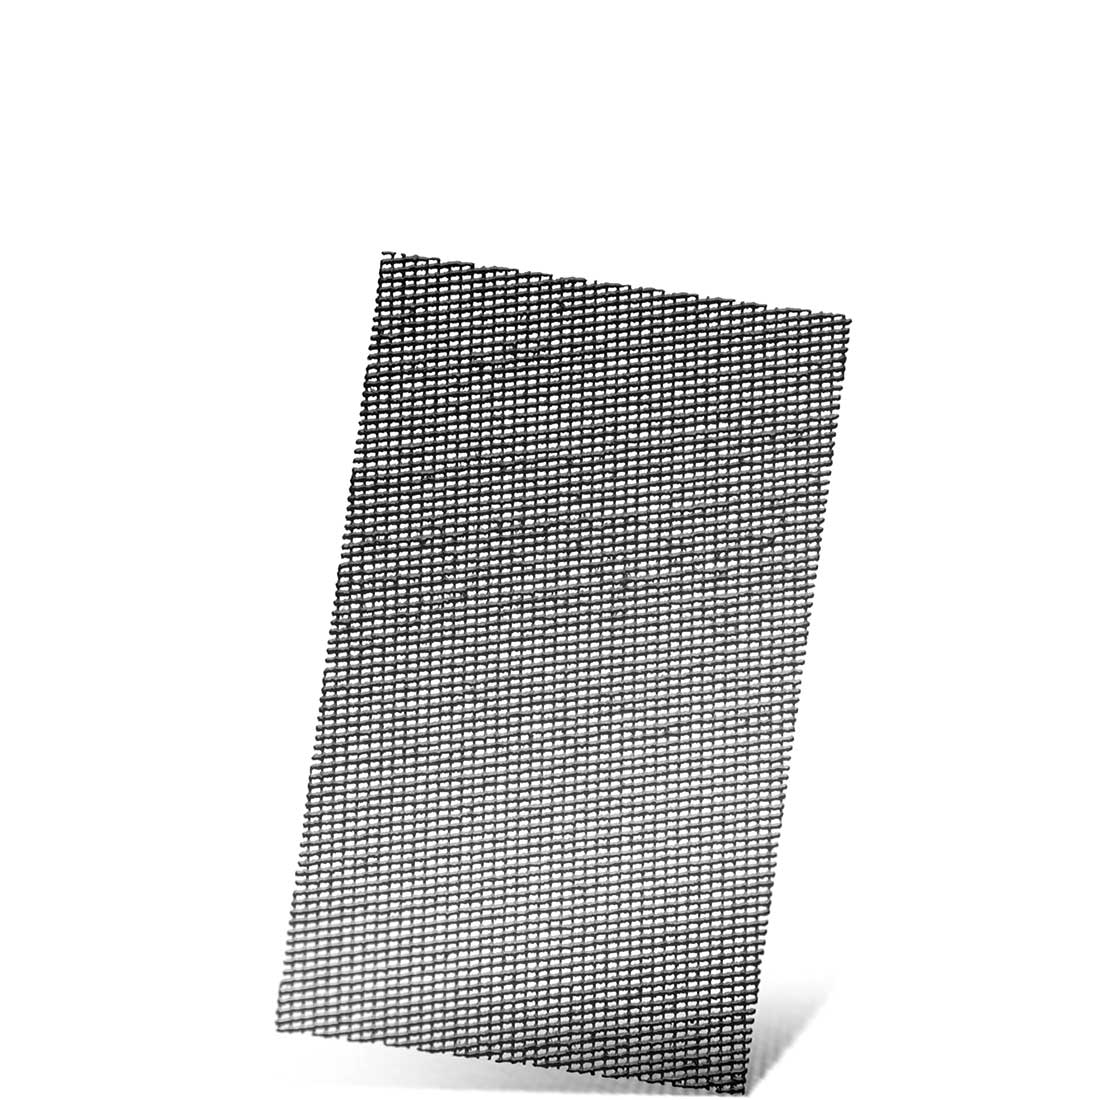 MENZER Klett-Schleifgitter für Schwingschleifer, K60–180, 133 x 80 mm / Gitter / Siliciumcarbid